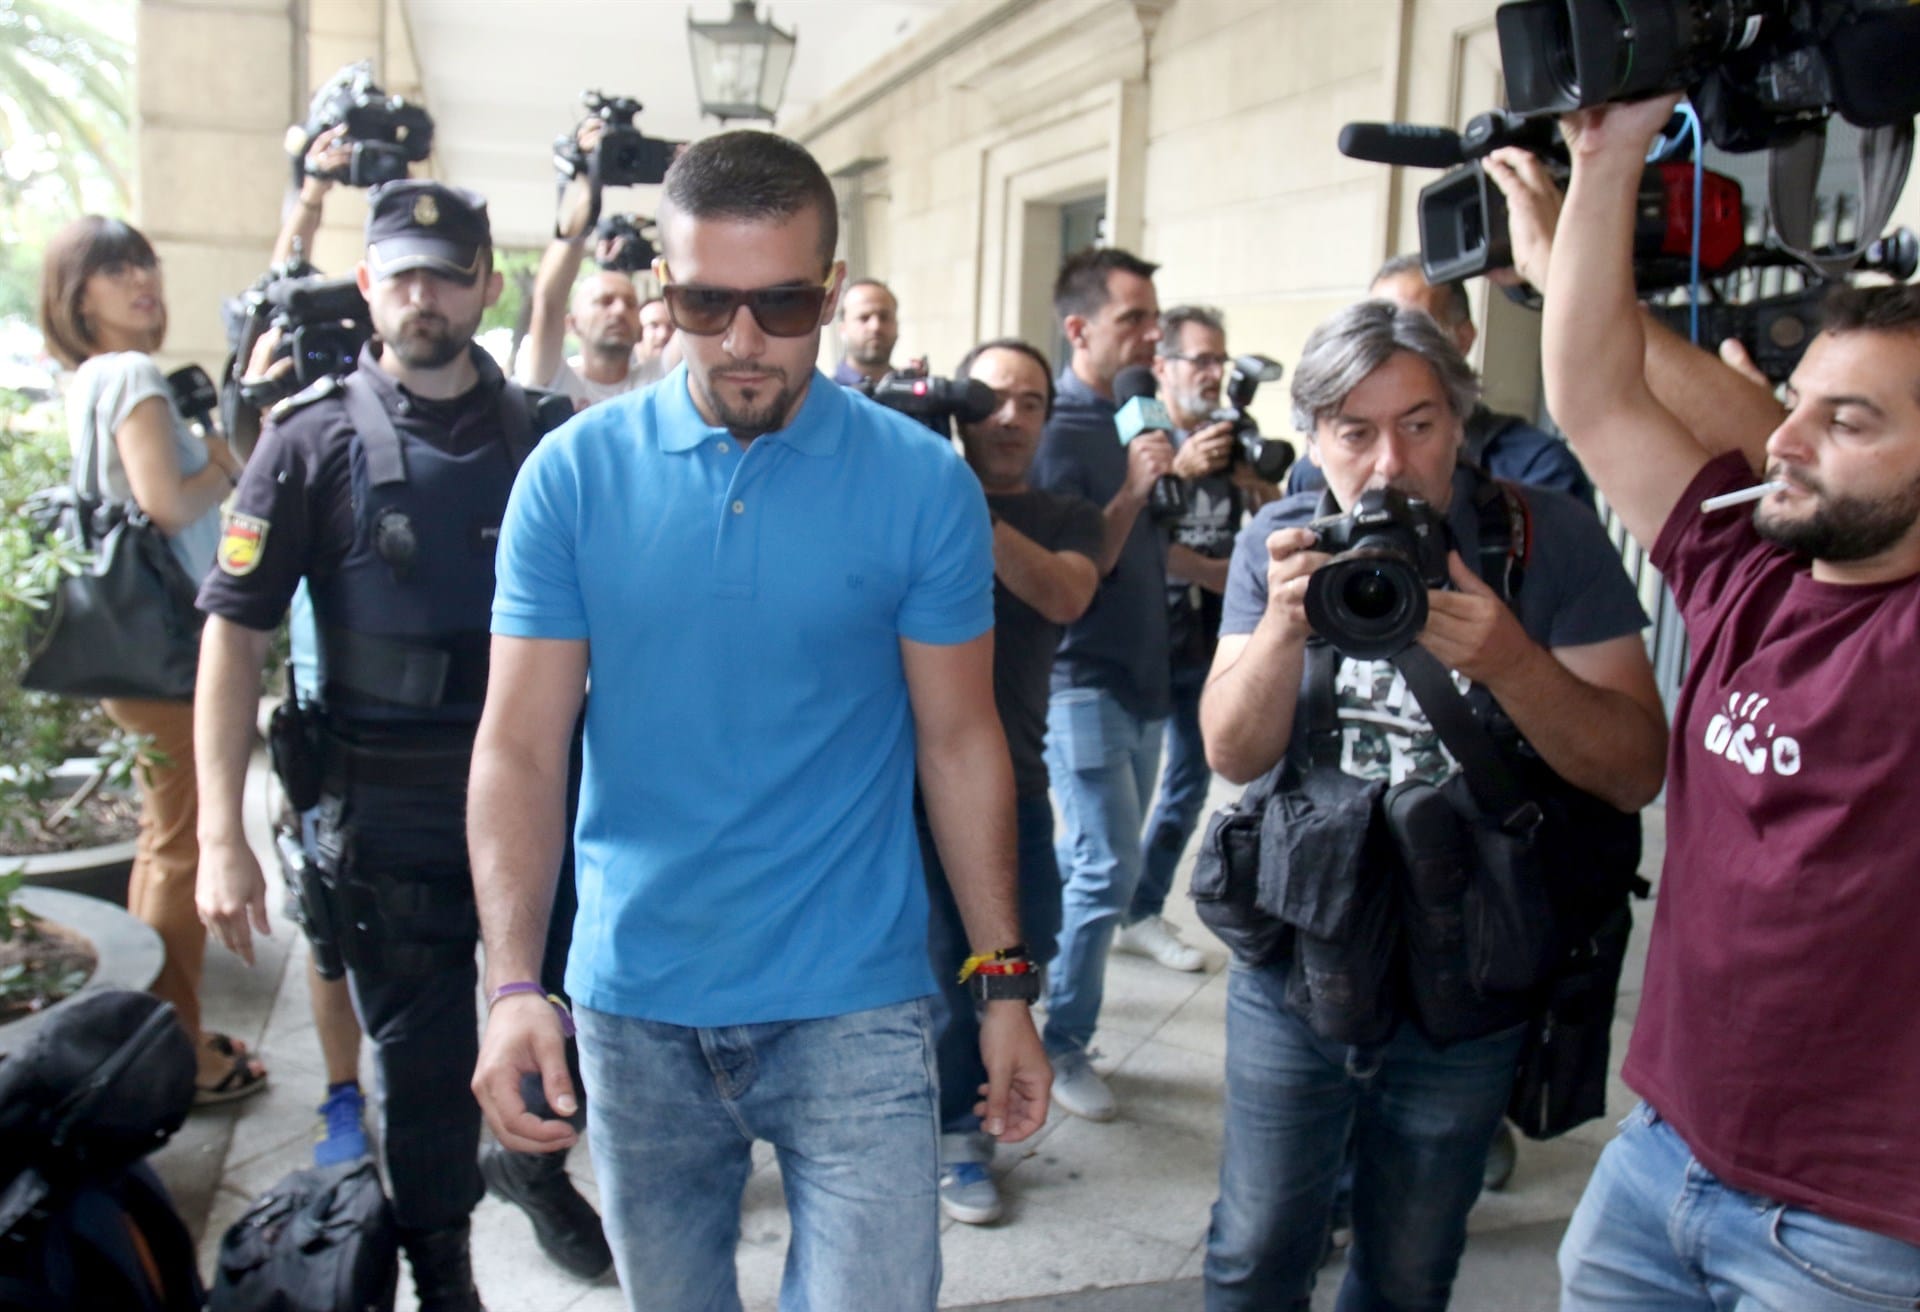 La Audiencia de Sevilla rechaza dejar en libertad al miembro de ‘la manada’ acusado de robar unas gafas